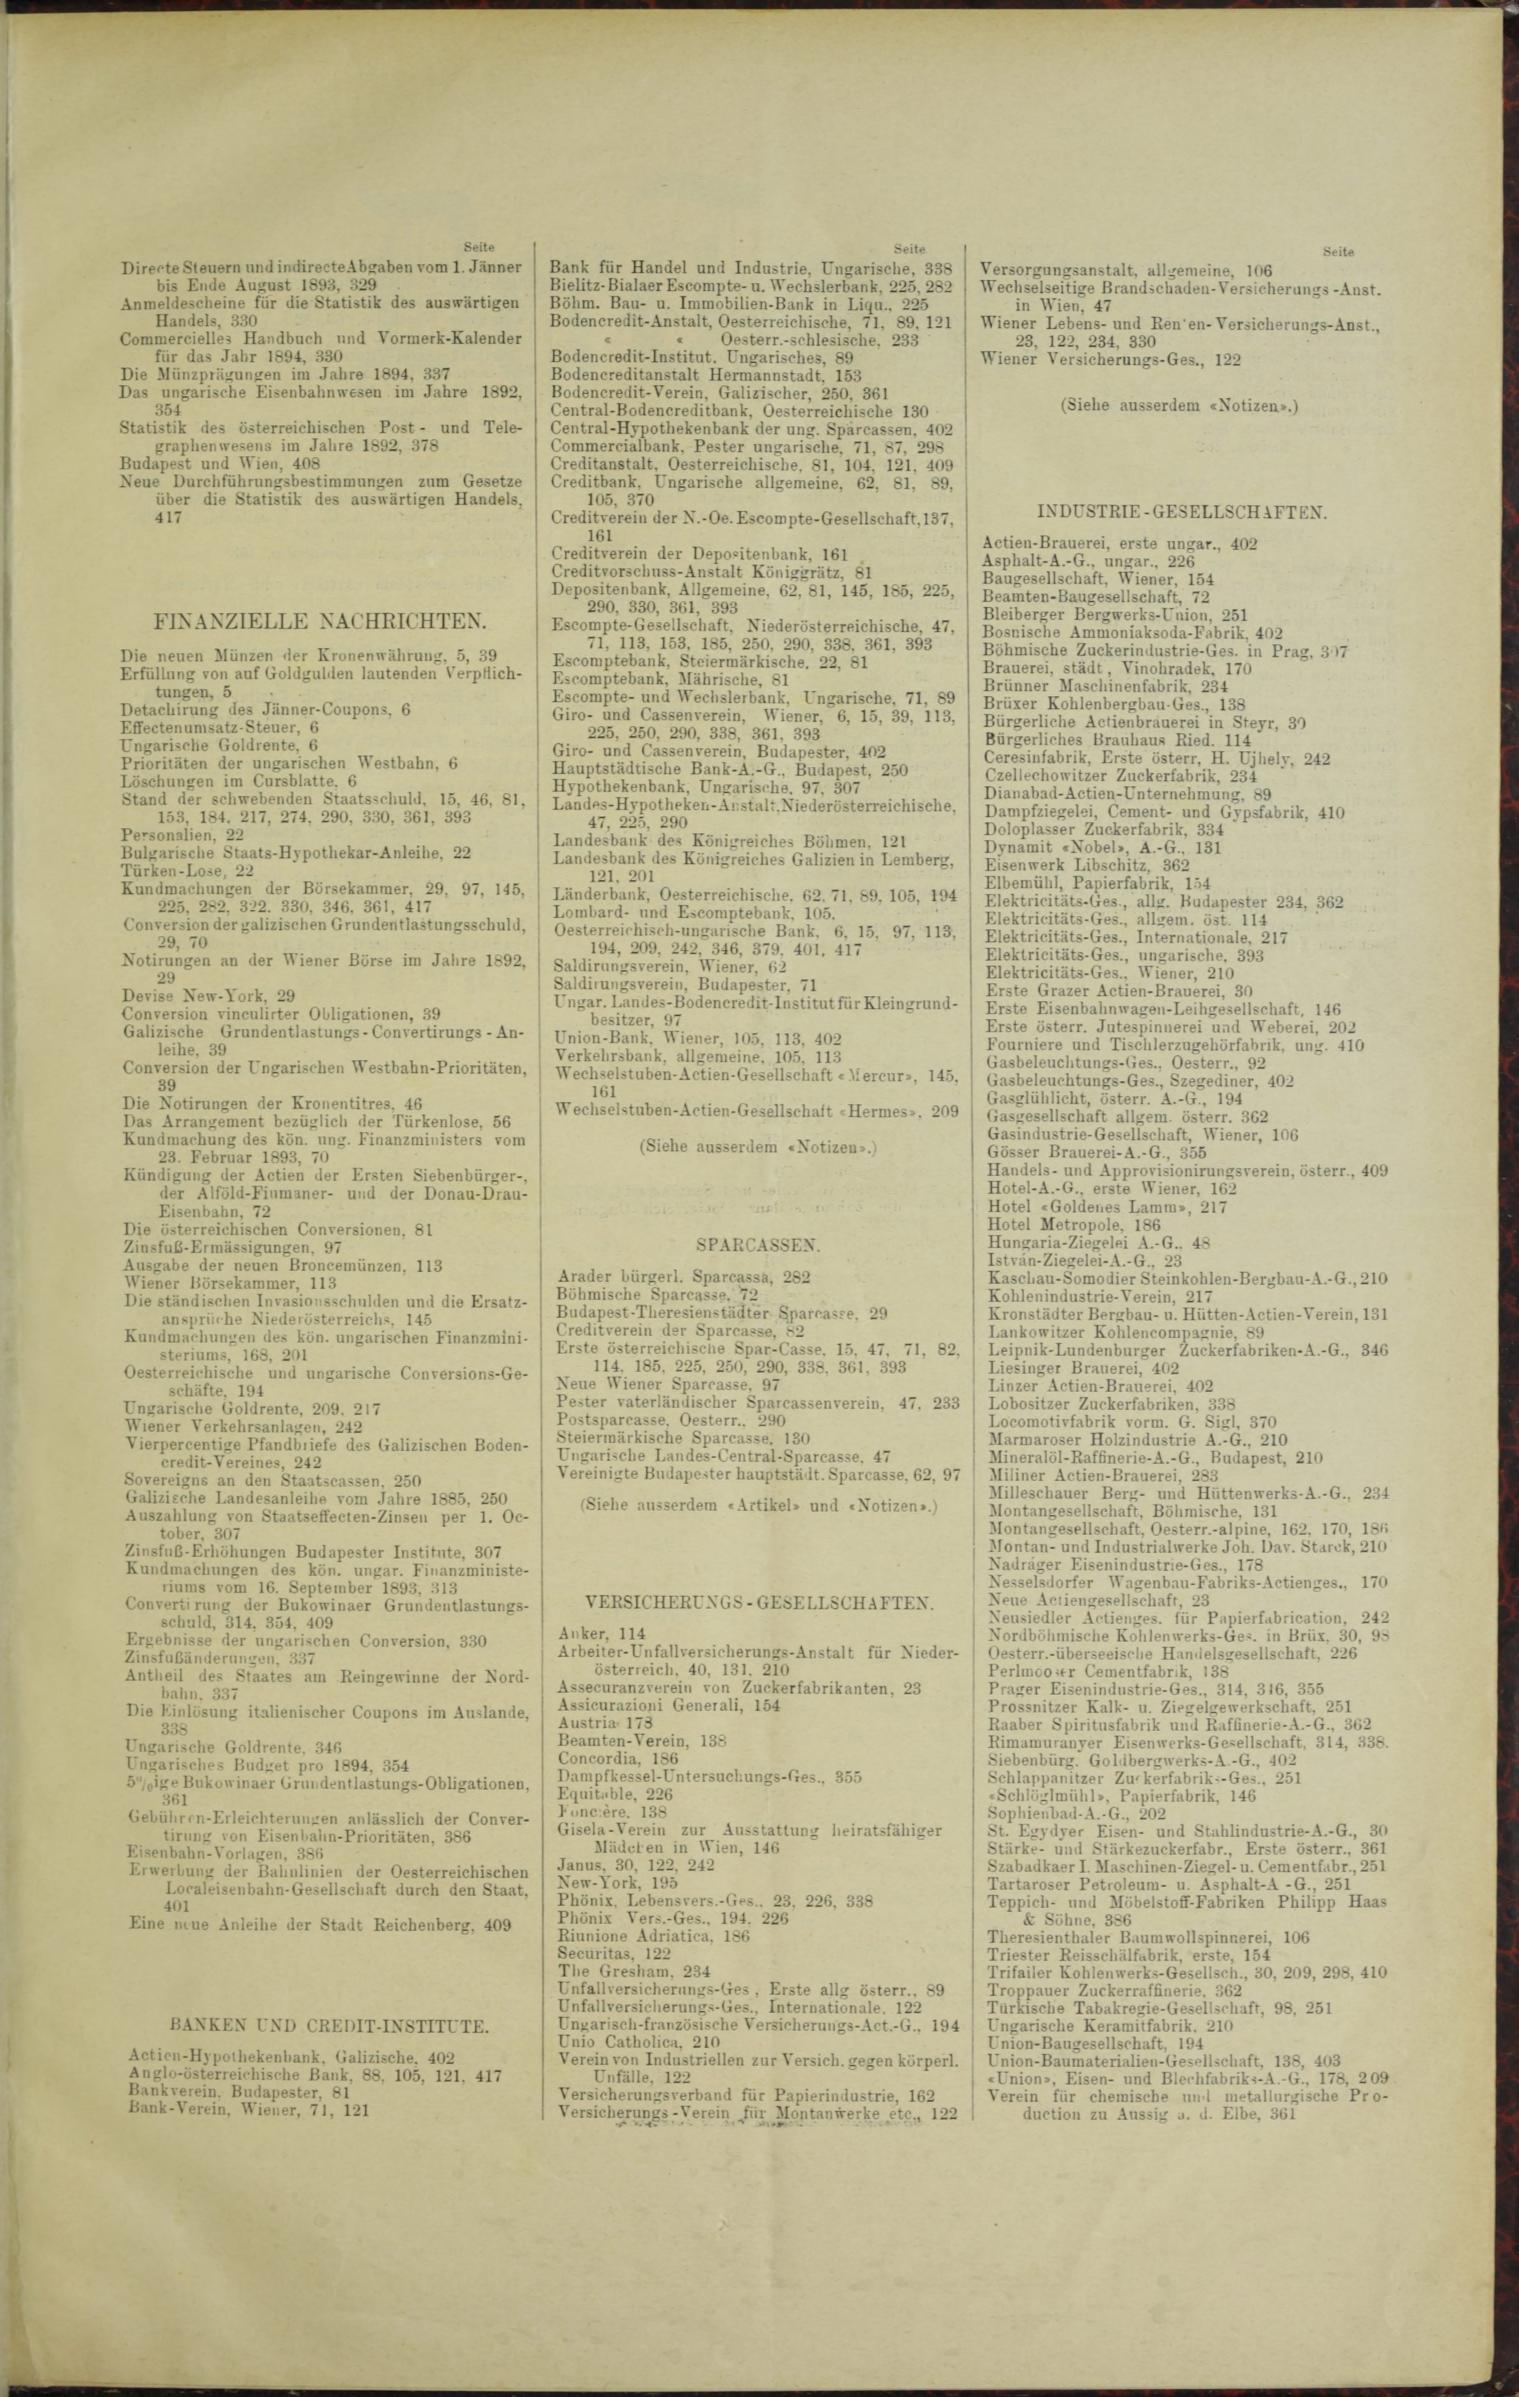 Der Tresor 27.04.1893 - Seite 11